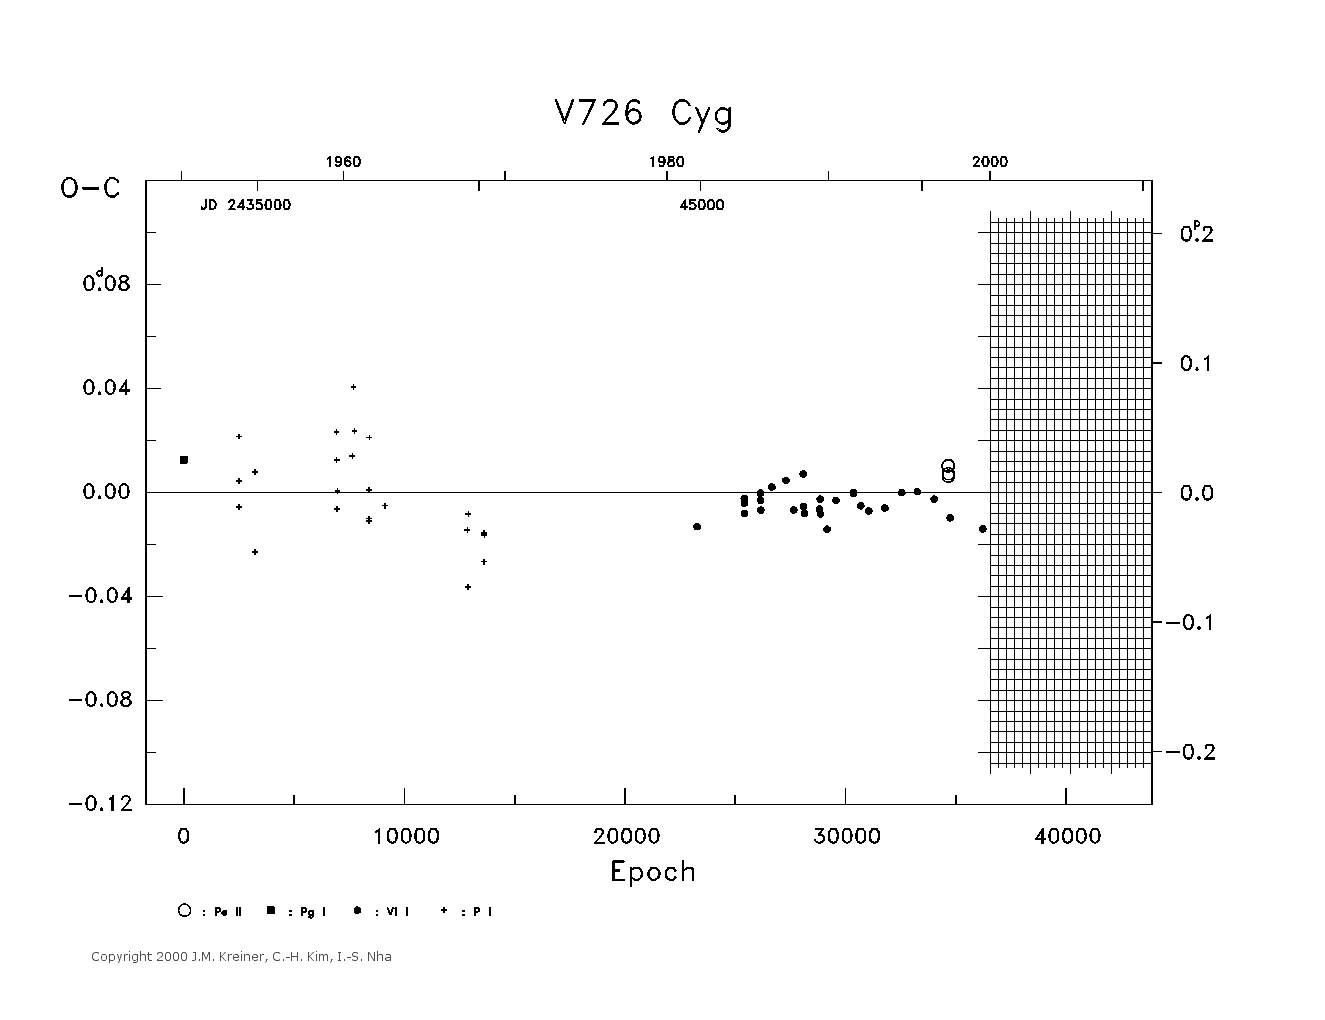 [IMAGE: large V726 CYG O-C diagram]